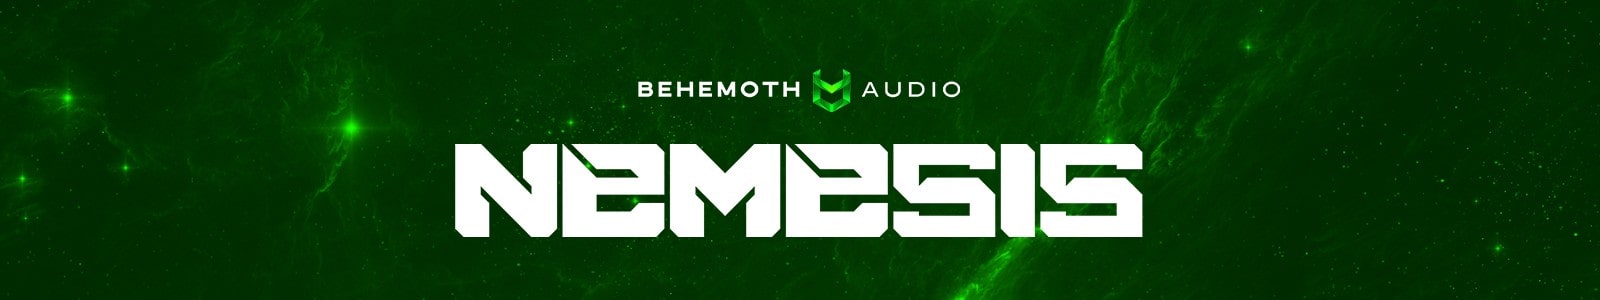 nemesis by behemoth audio